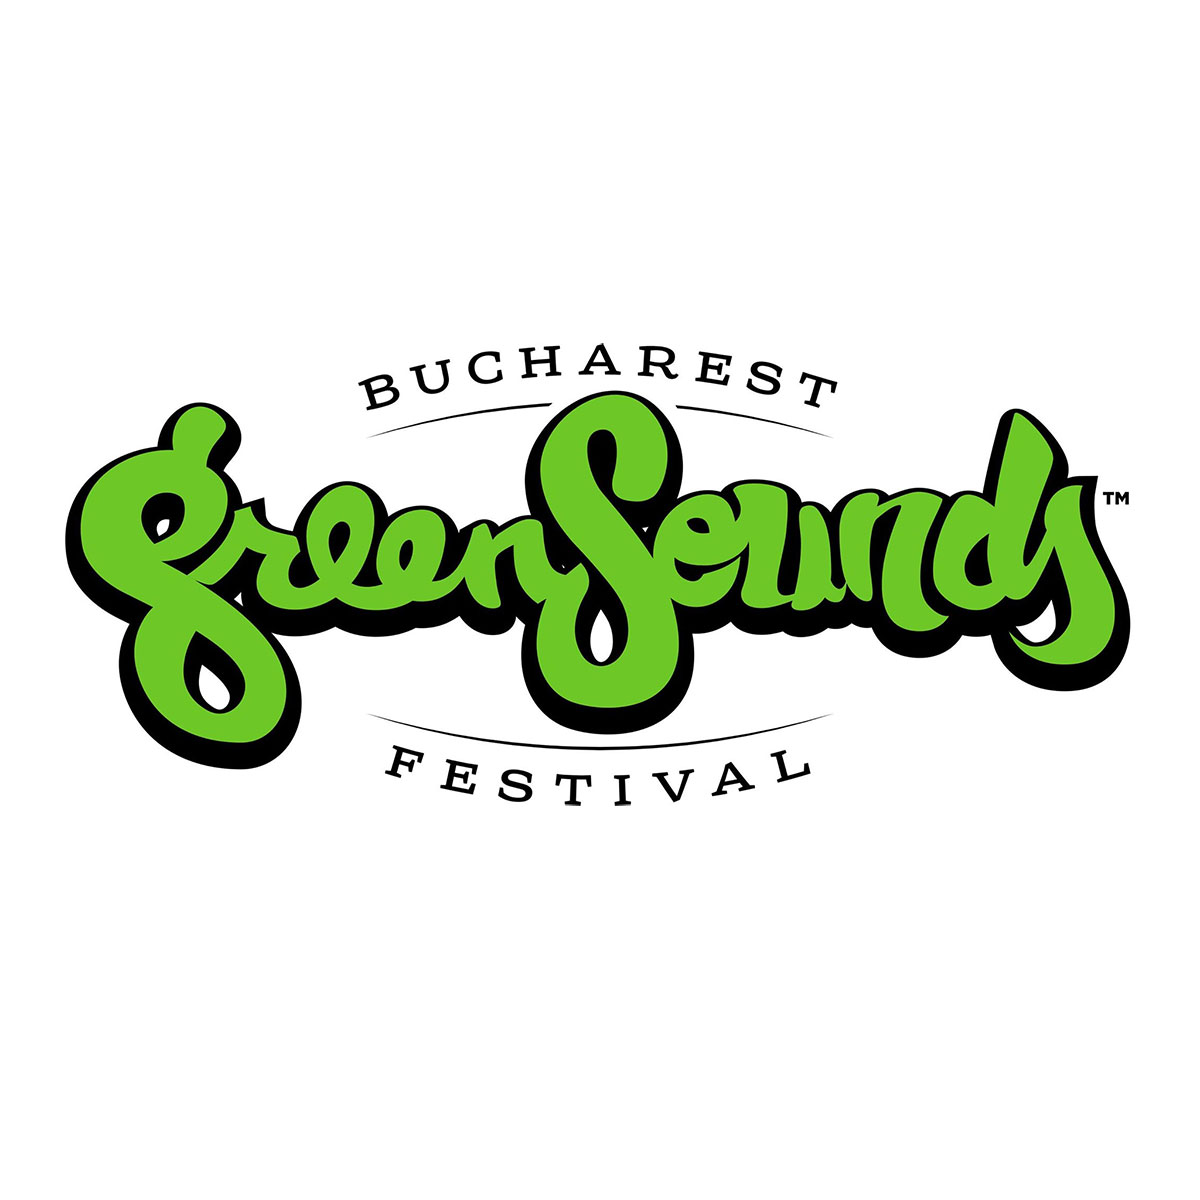 BUCHAREST GreenSounds FESTIVAL 2015